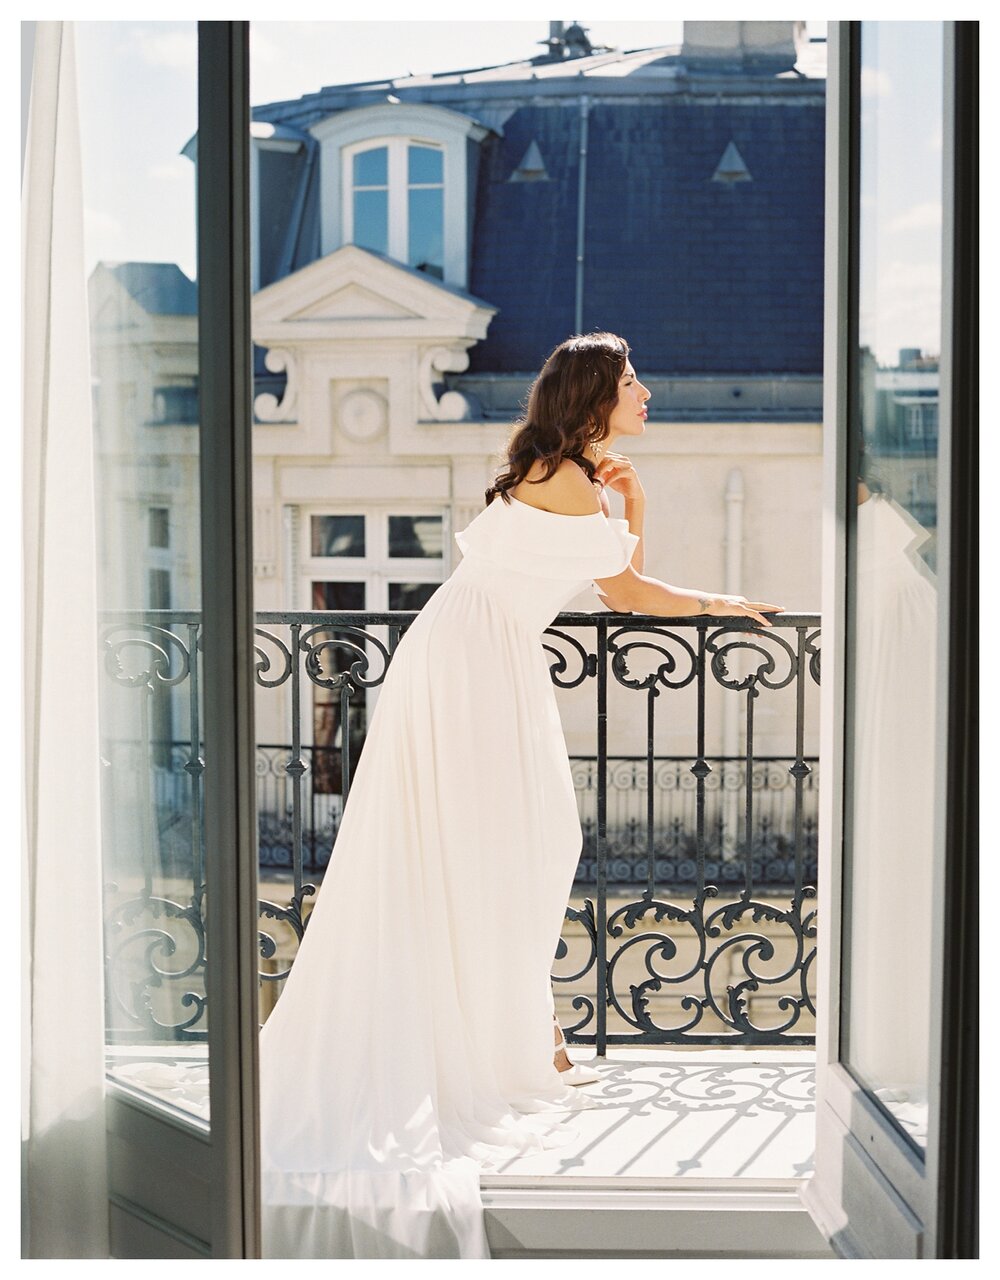  Hotel Chateau Frontenac Paris wedding, Paris balcony, bride on Paris balcony, bardot wedding dress 